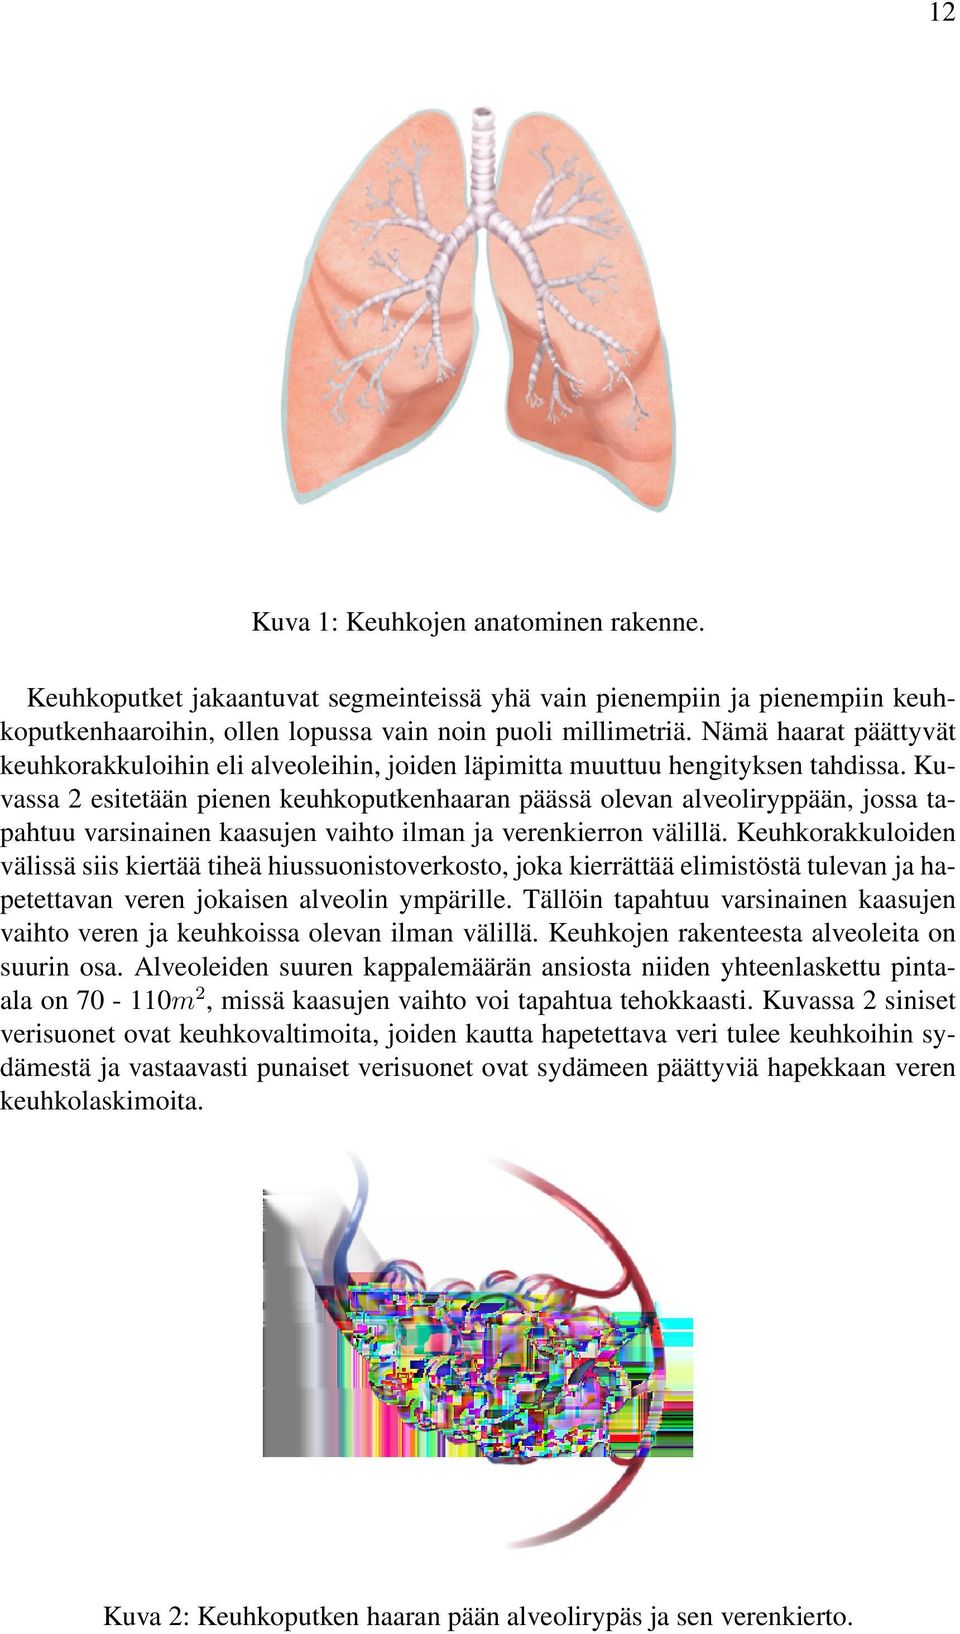 Kuvassa 2 esitetään pienen keuhkoputkenhaaran päässä olevan alveoliryppään, jossa tapahtuu varsinainen kaasujen vaihto ilman ja verenkierron välillä.